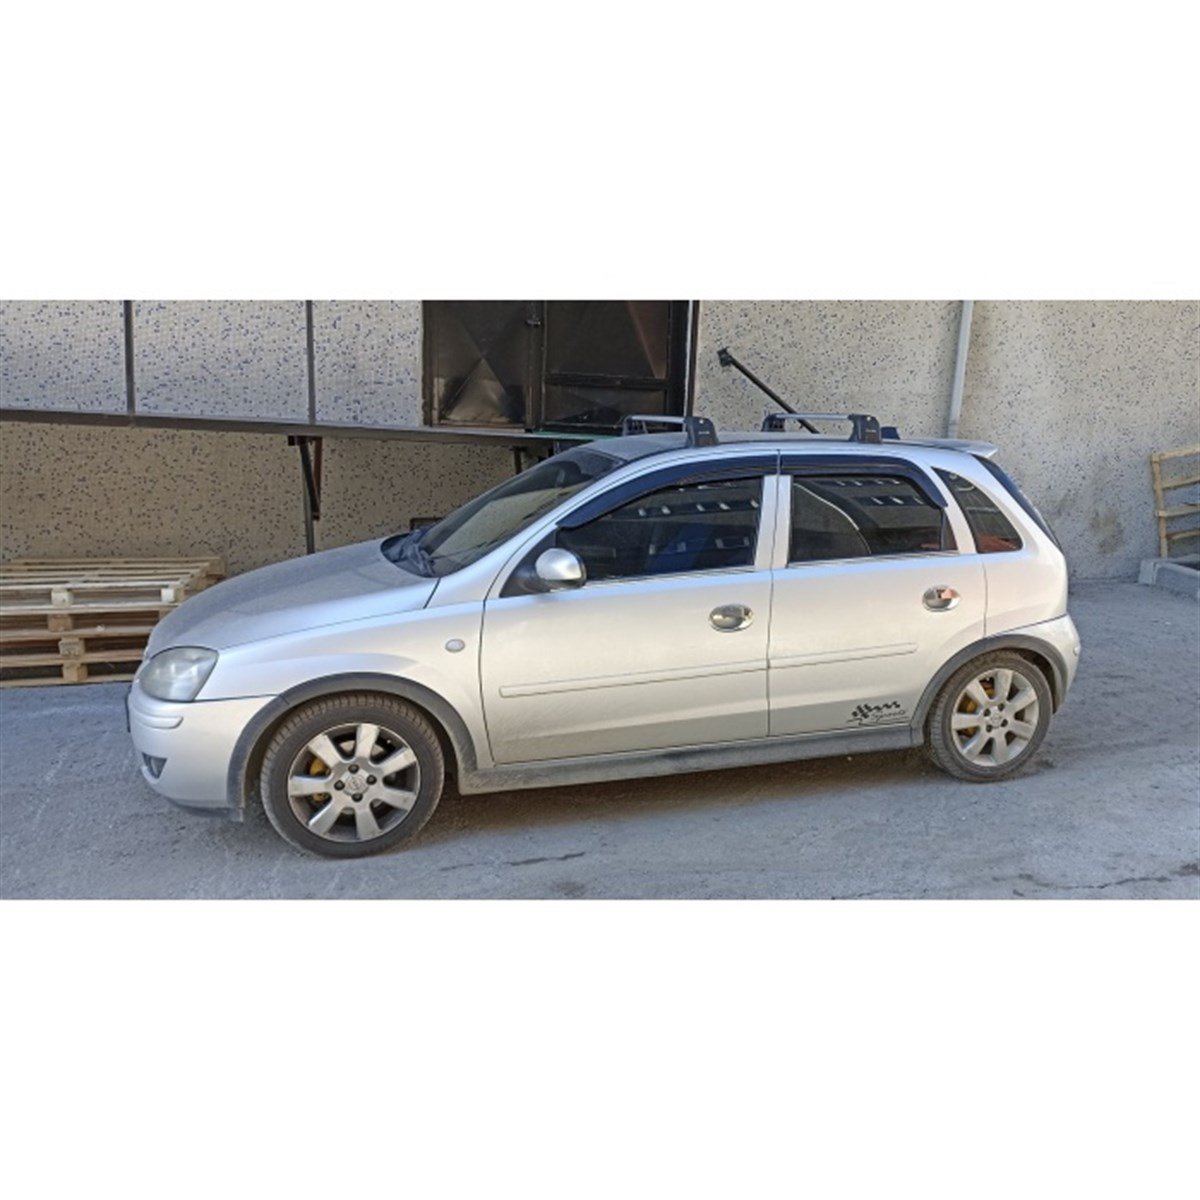 Opel Corsa C Portbagaj Taşıyıcı Ara Atkı